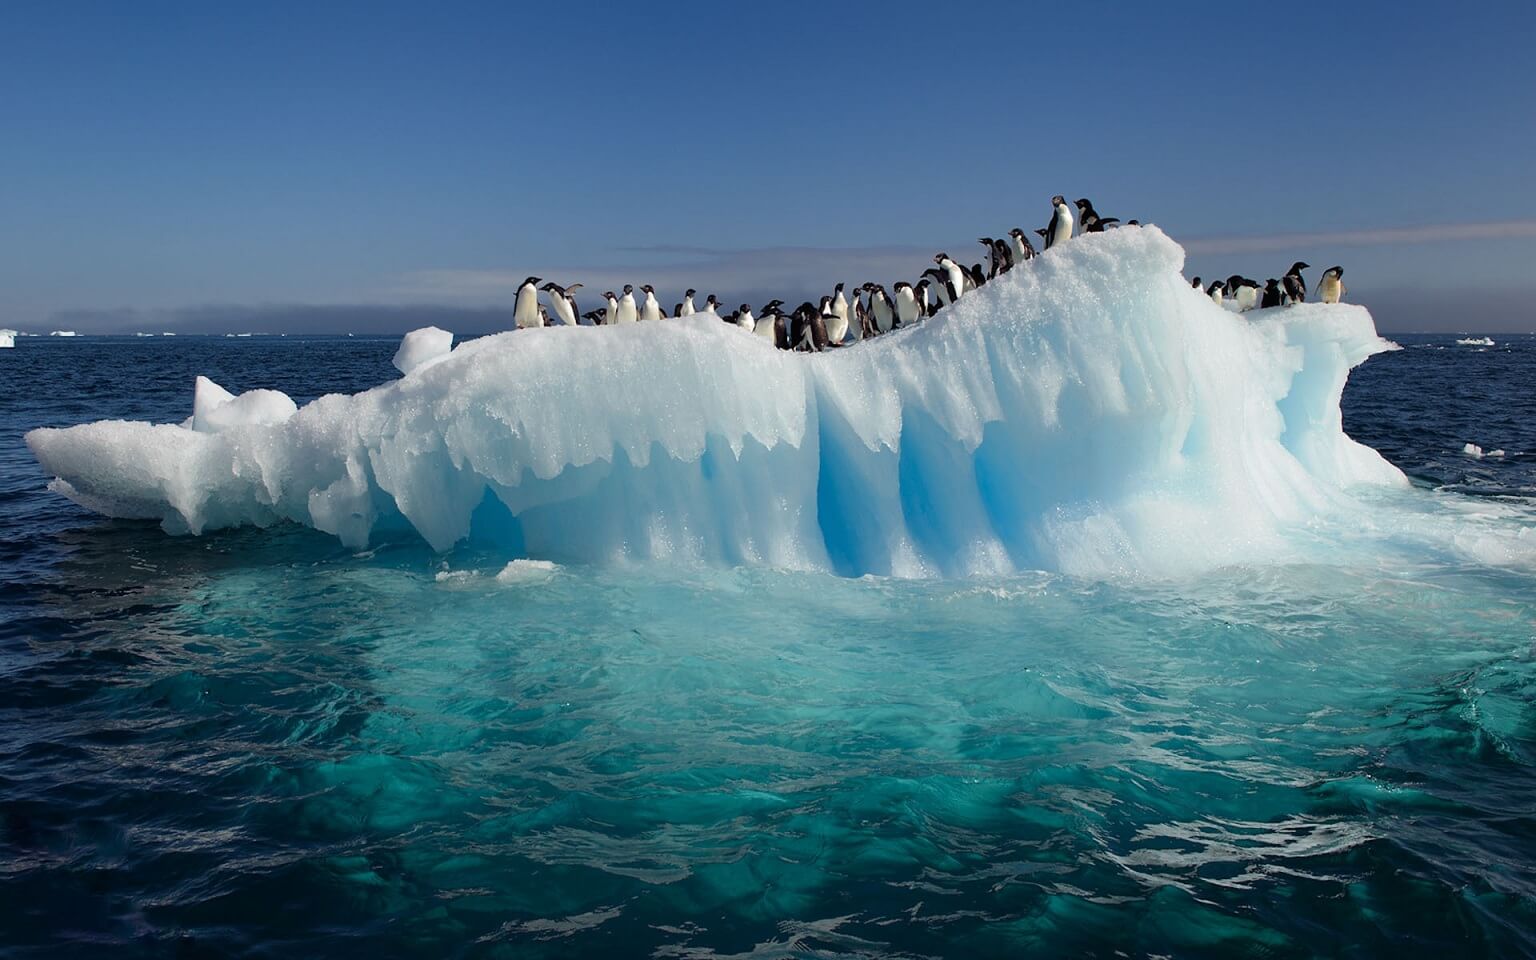 antarctica-ocean-ice-penguins-water-nature